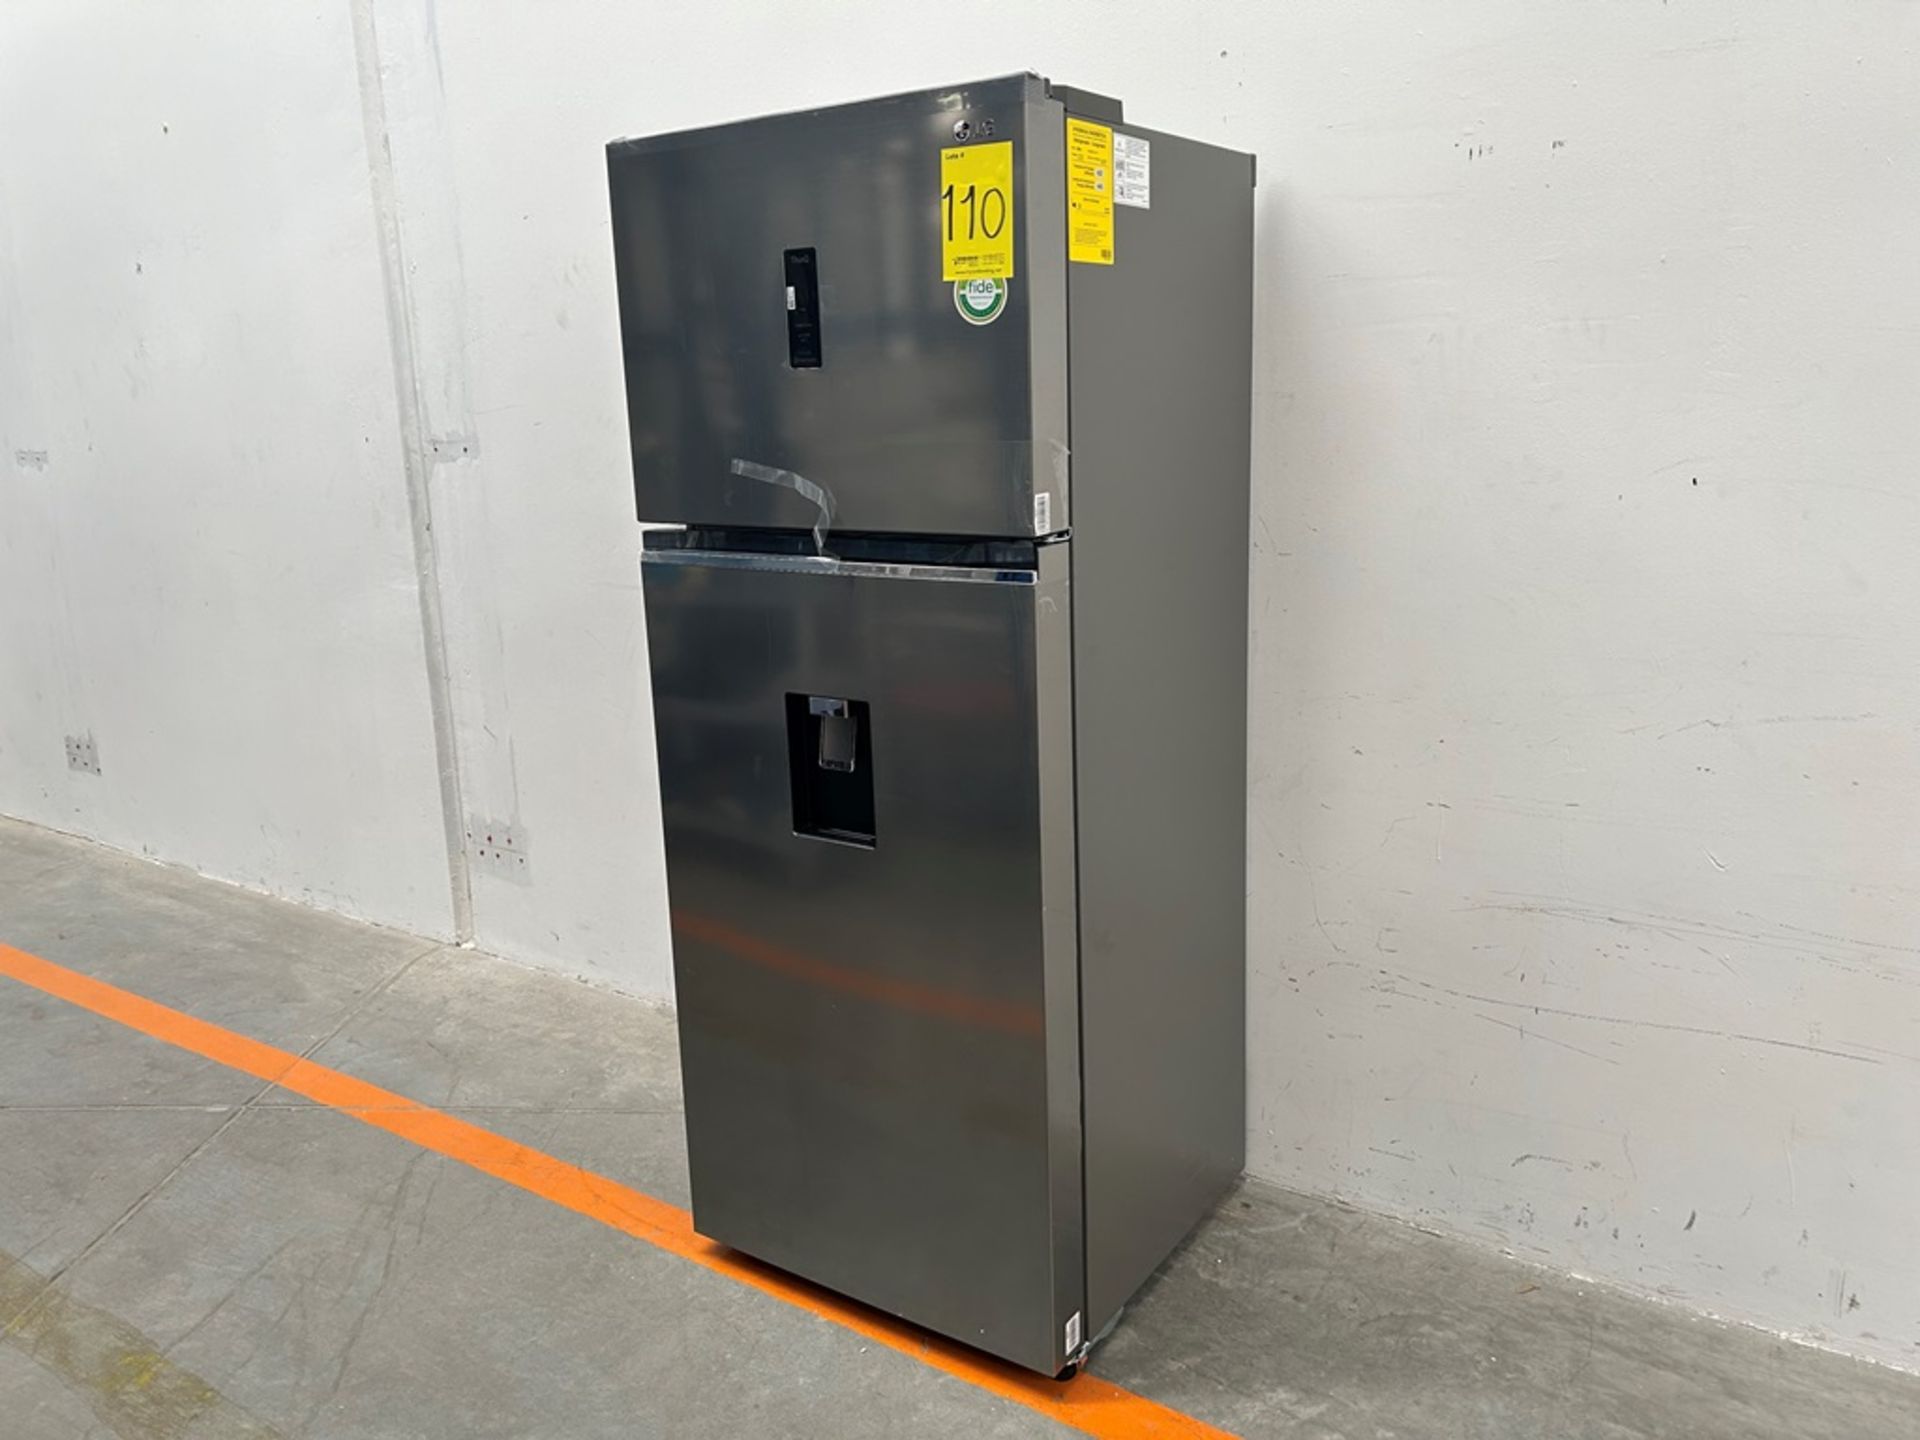 (NUEVO) Refrigerador con dispensador de agua Marca LG, Modelo VT40AWP, Serie 1S414, Color GRIS - Image 3 of 11